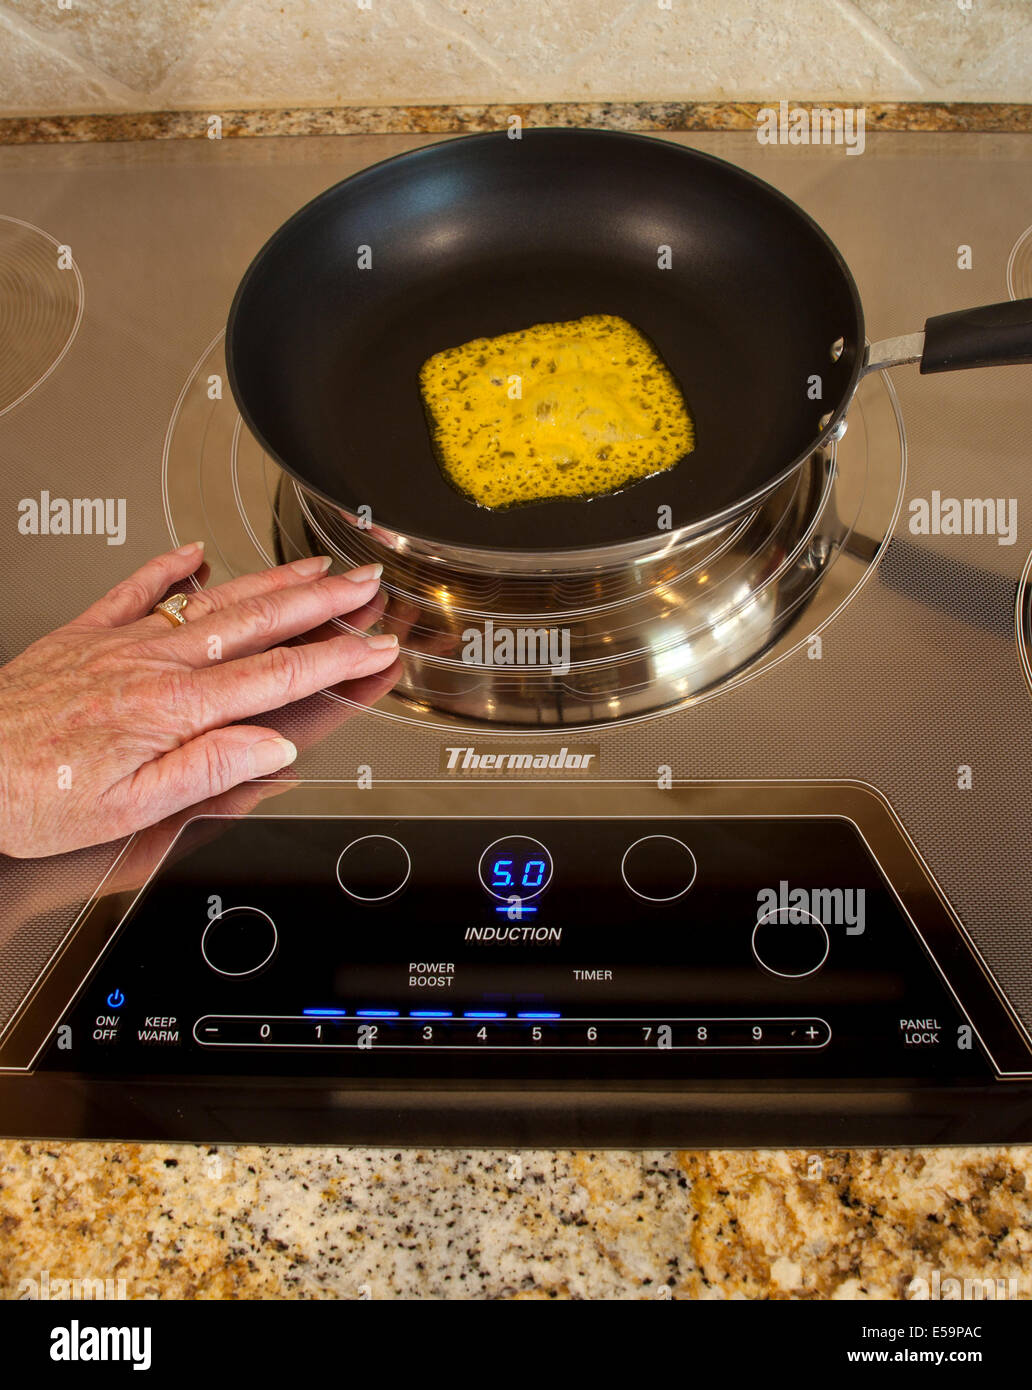 La energía magnética de tocar toque el ahorro energético Thermador cooktop de inducción con fundir queso serie de 4 imágenes. Señor © Myrleen Pearson Foto de stock